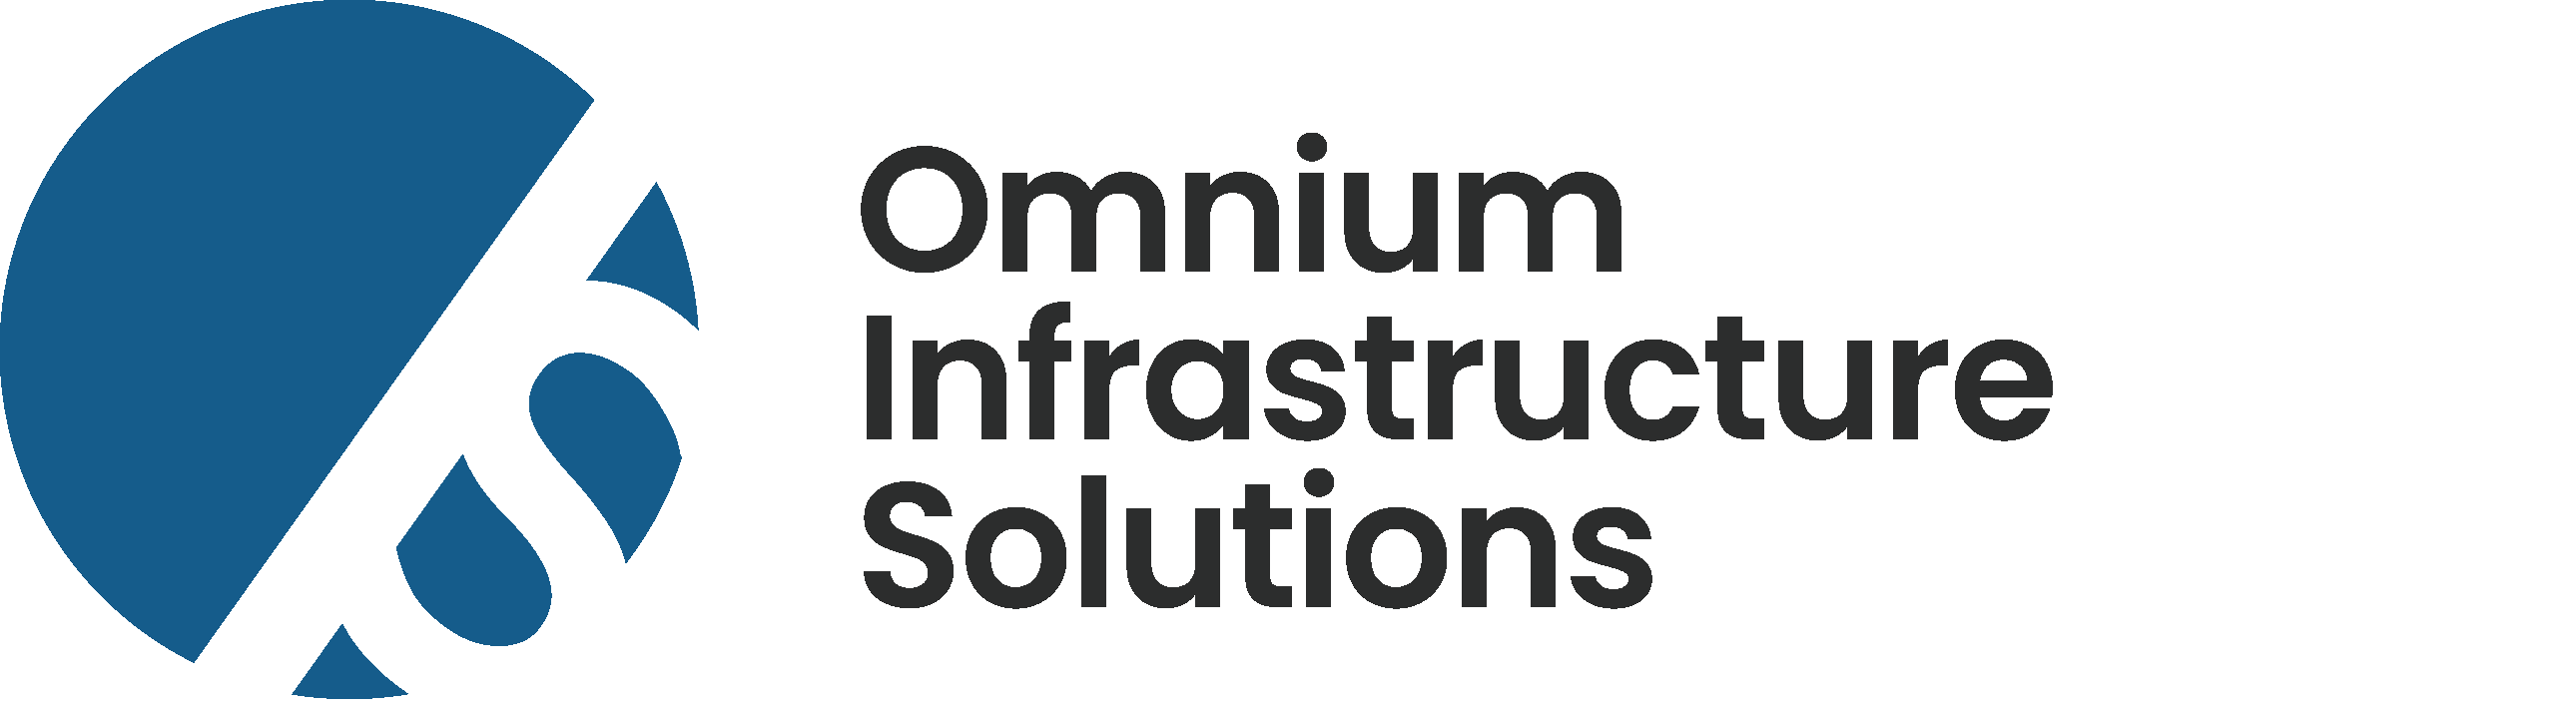 Omnium Infrastructure Solutions